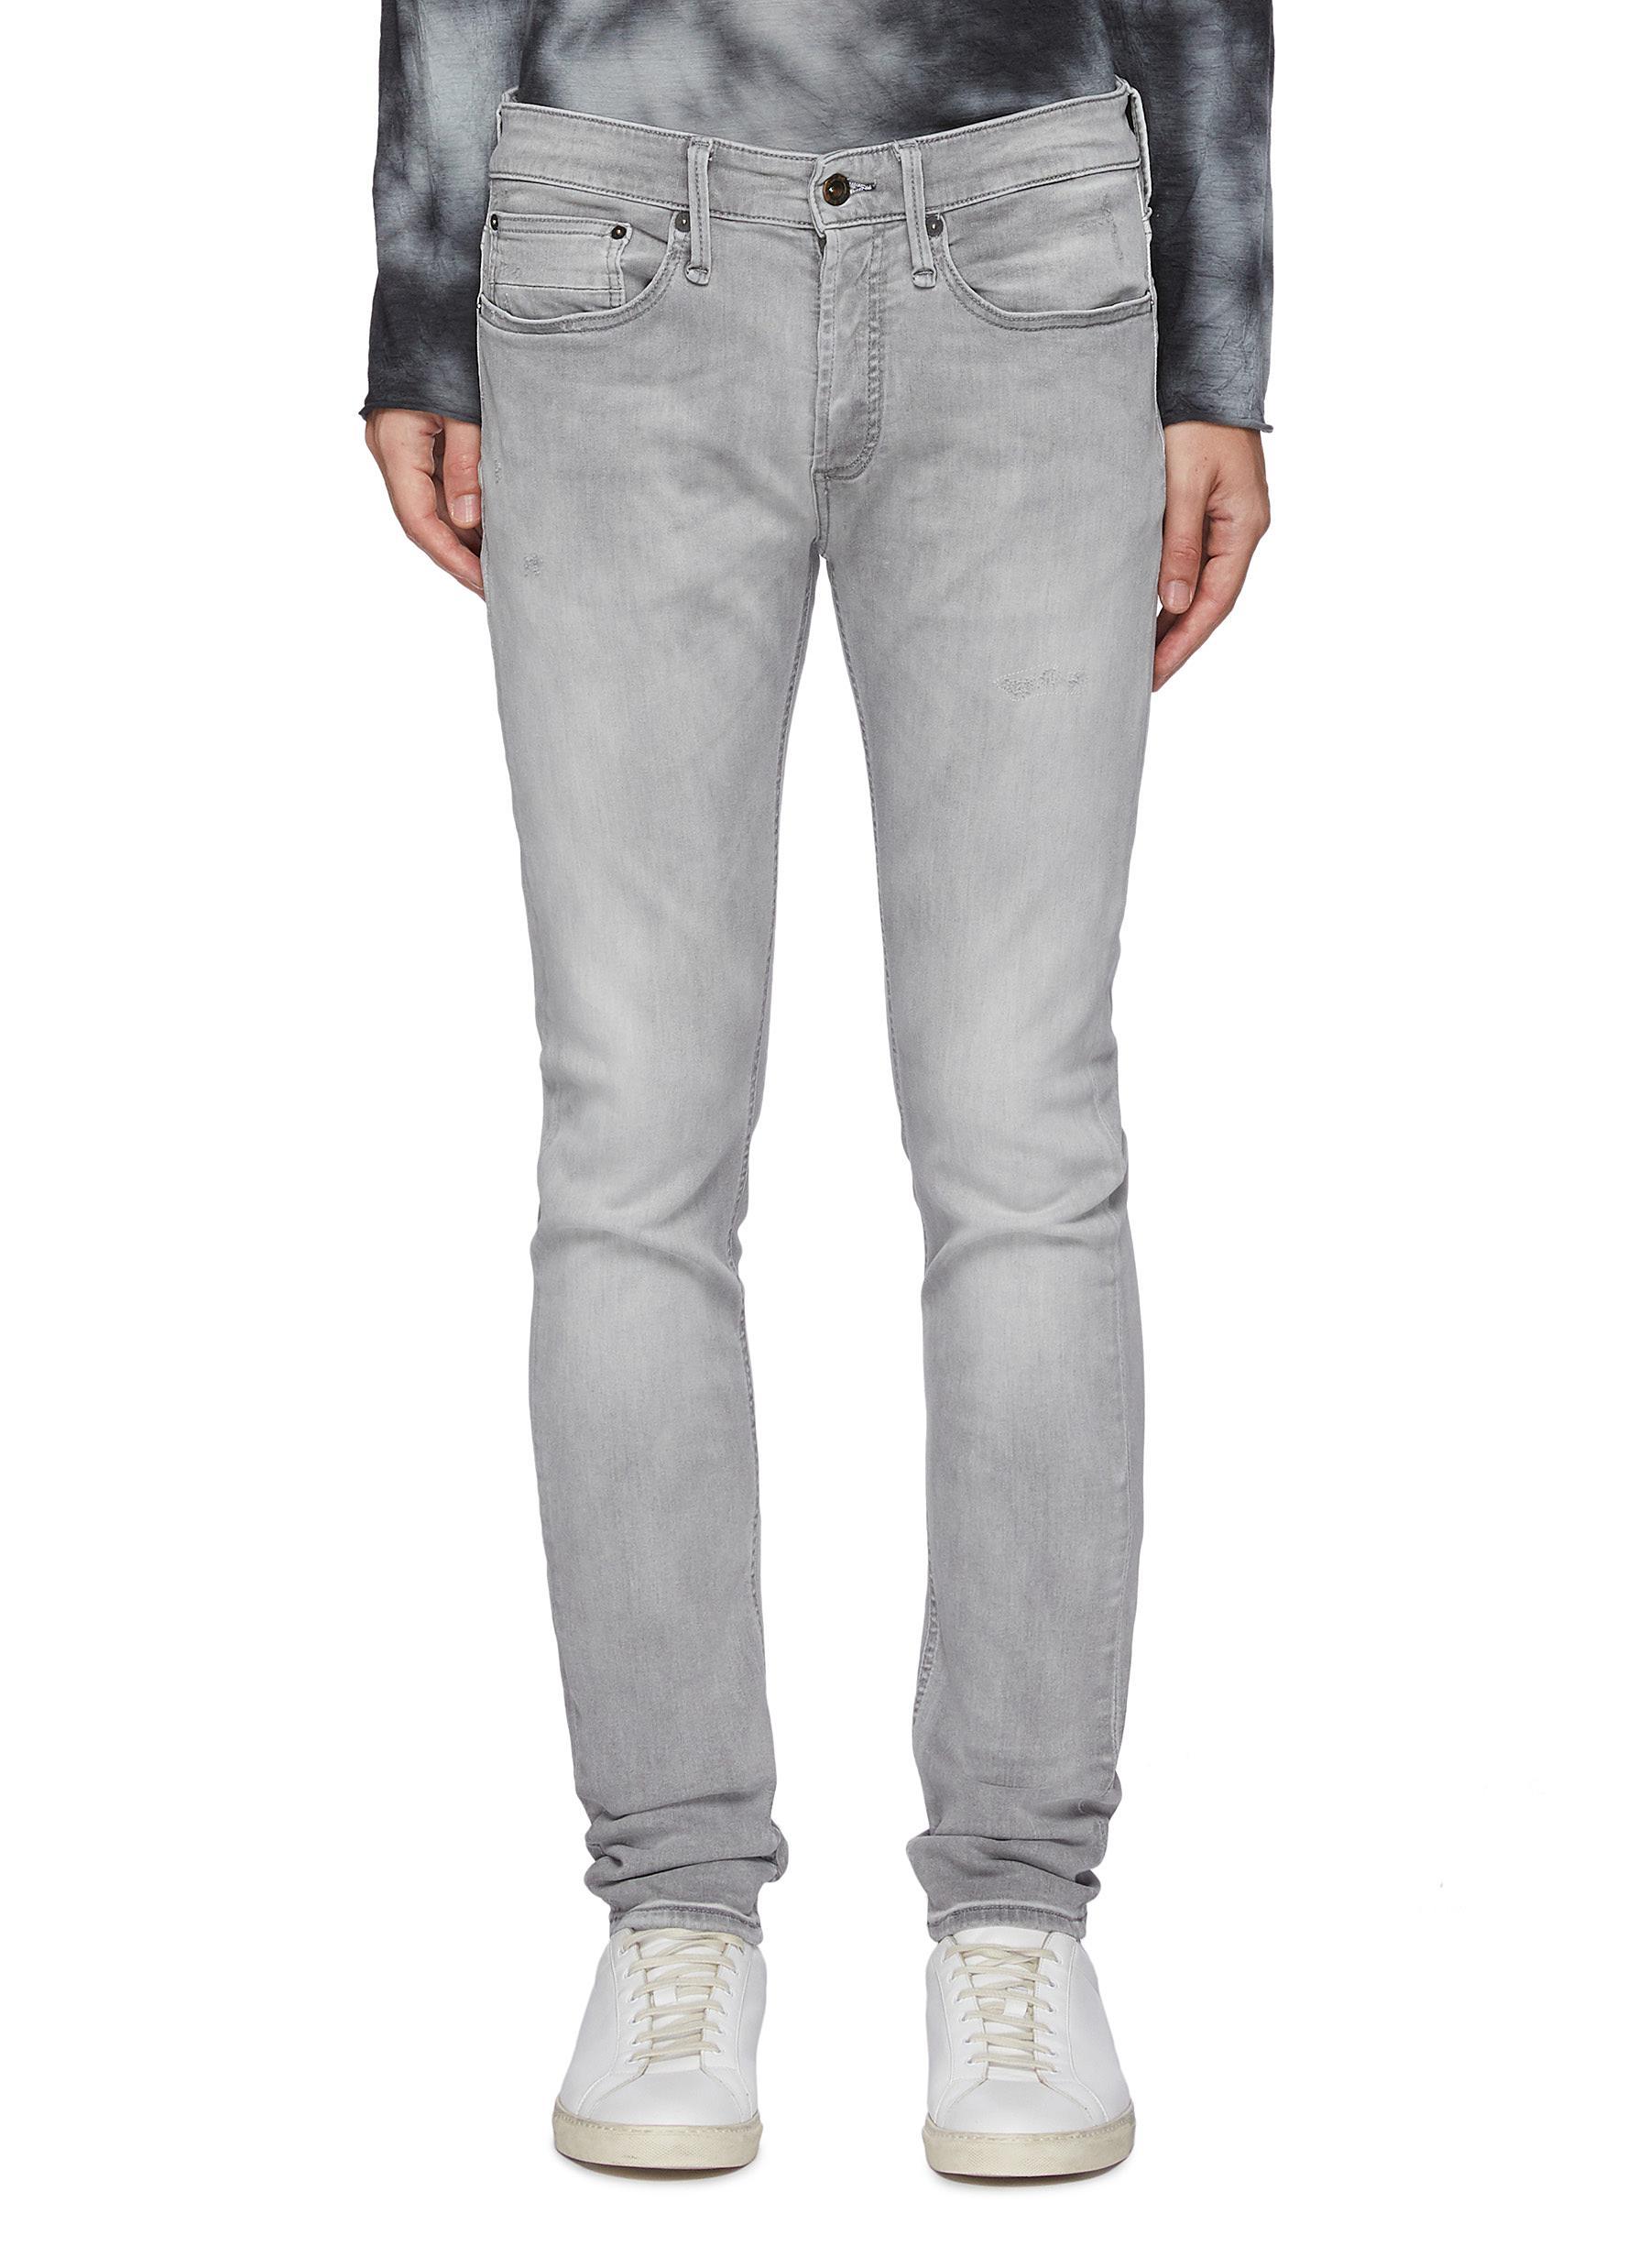 Denham Denim 'bolt' Light Wash Skinny Jeans Men Clothing Jeans Skinny  'bolt' Light Wash Skinny Jeans in Grey (Gray) for Men - Lyst